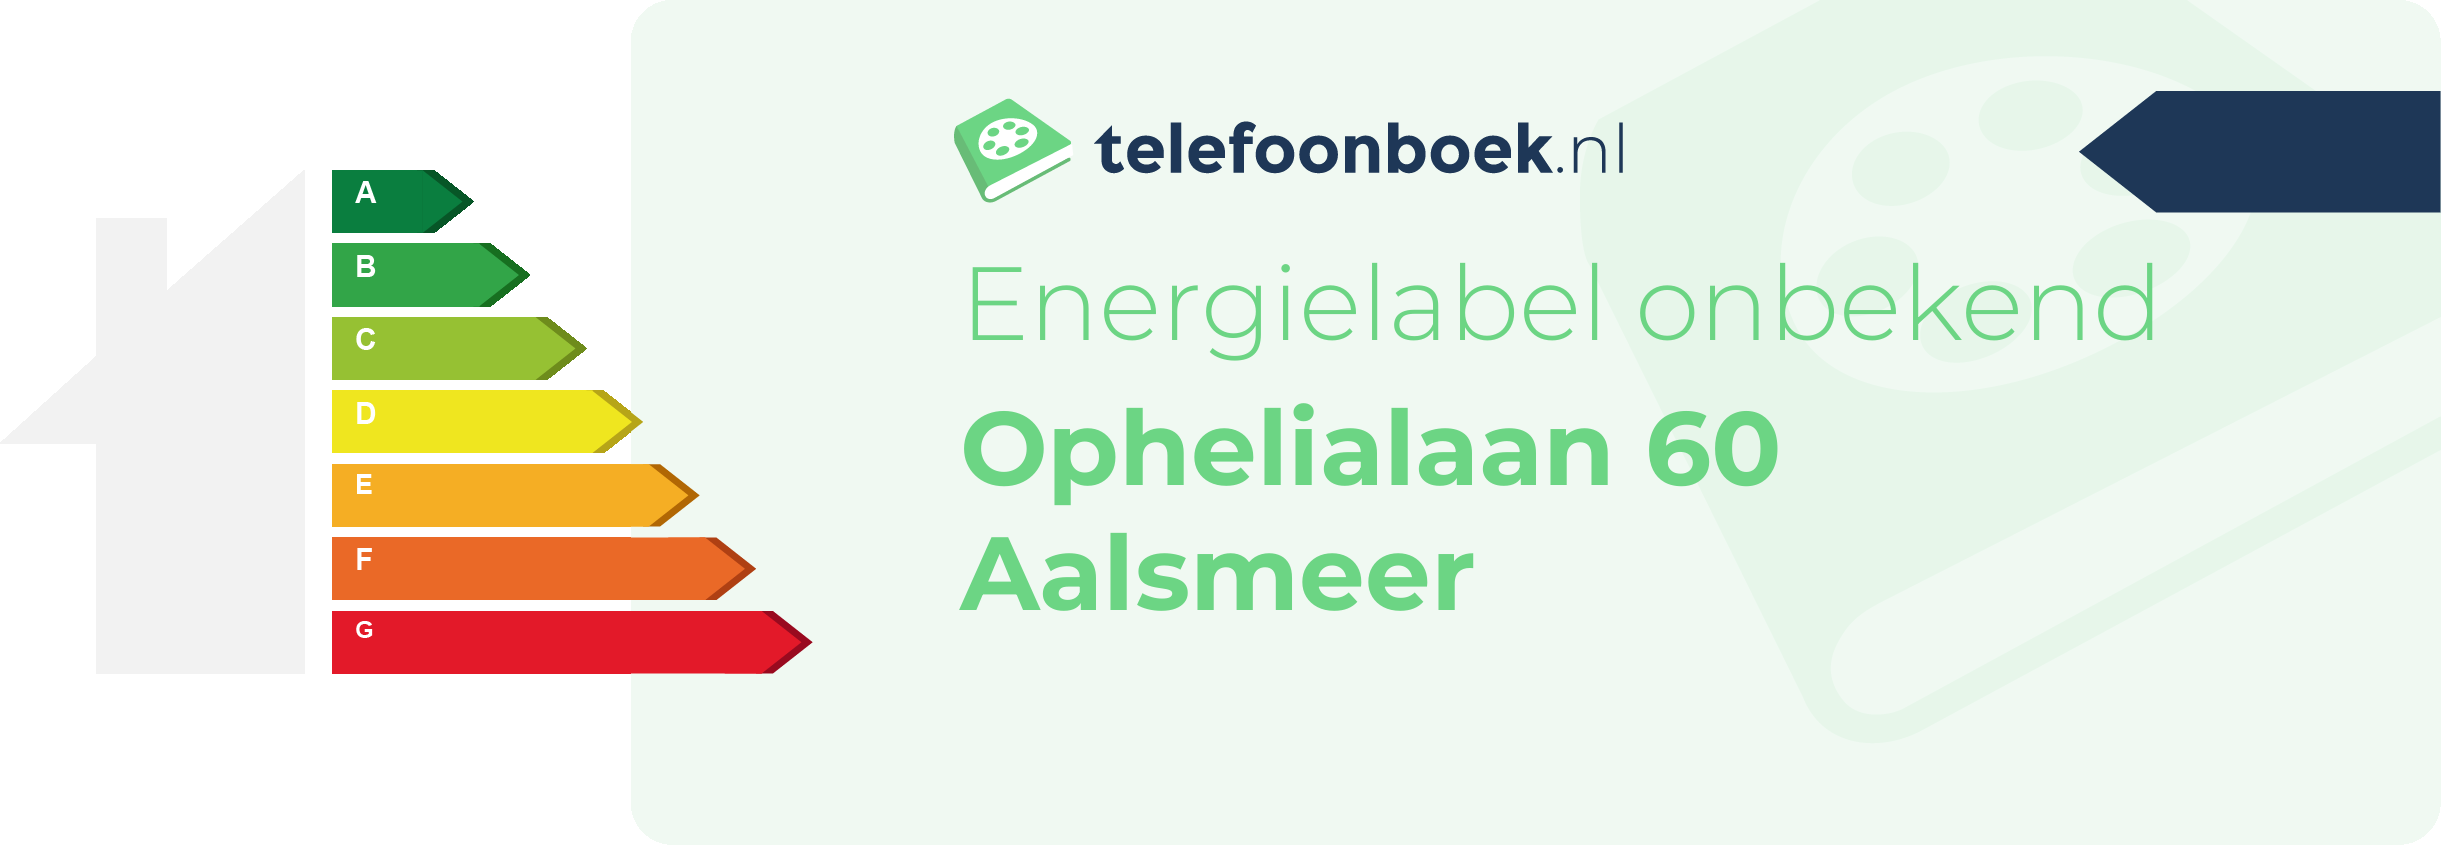 Energielabel Ophelialaan 60 Aalsmeer